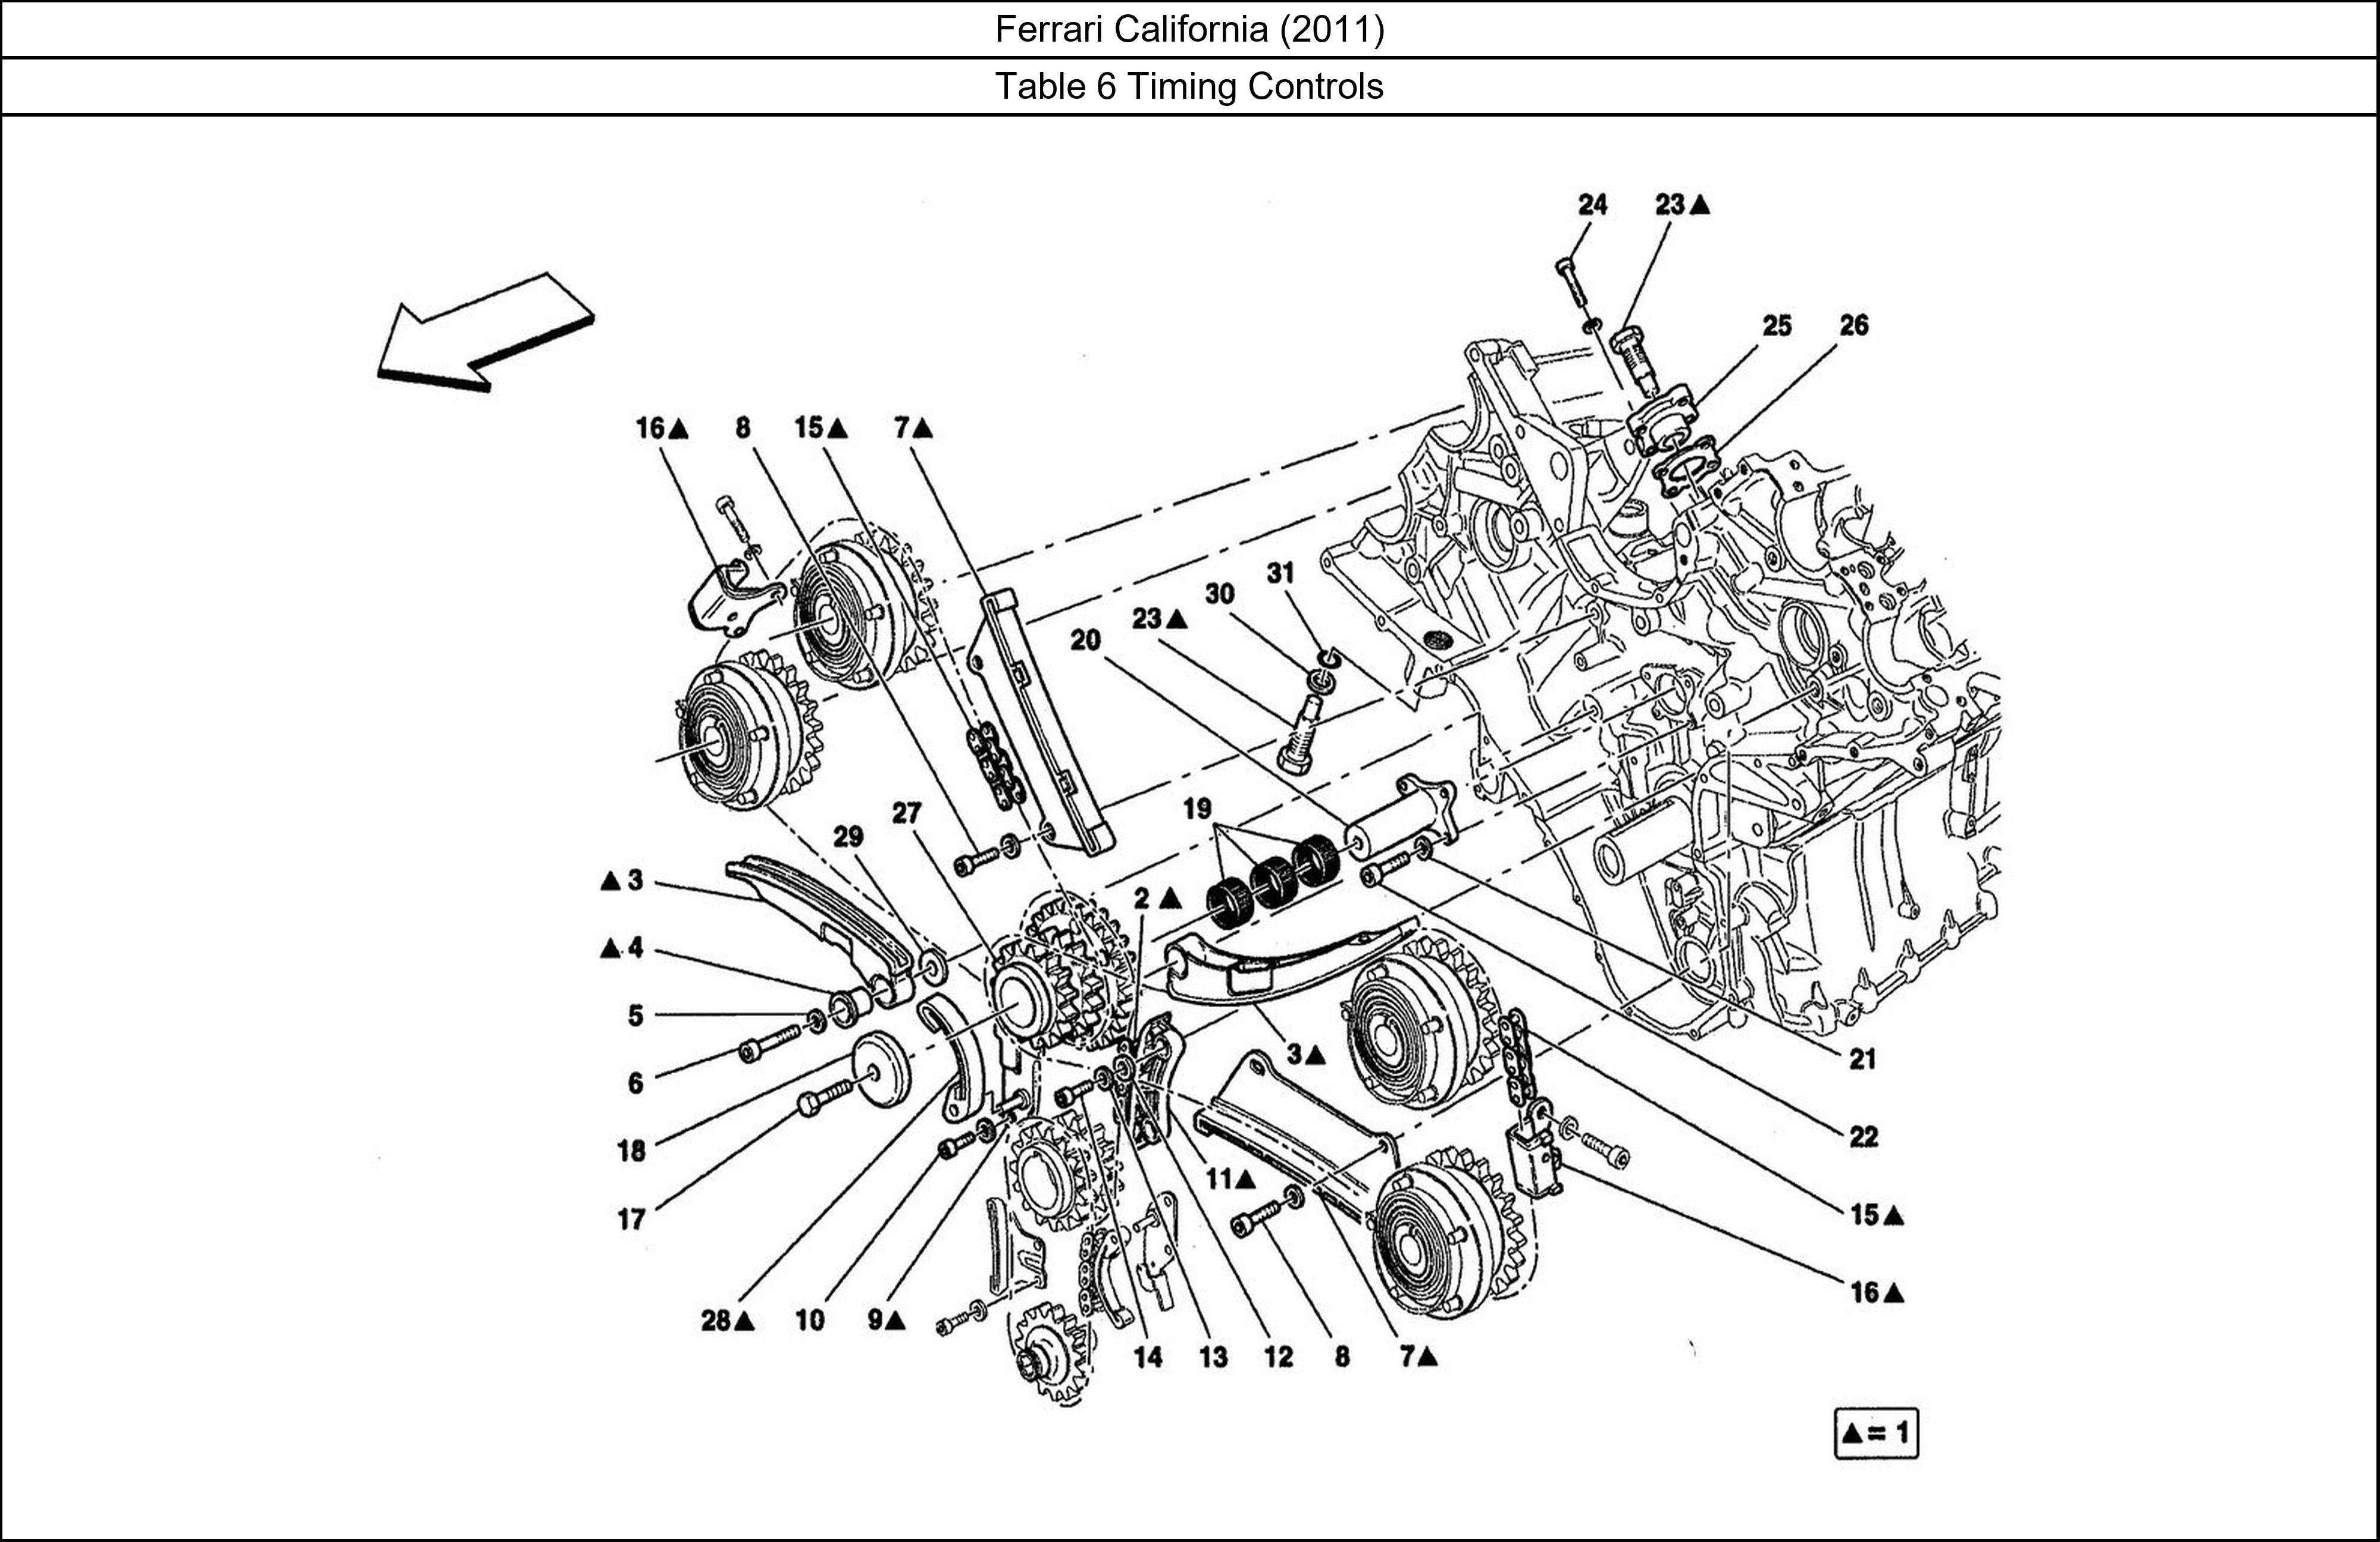 Ferrari Parts Ferrari California (2011) Table 6 Timing Controls